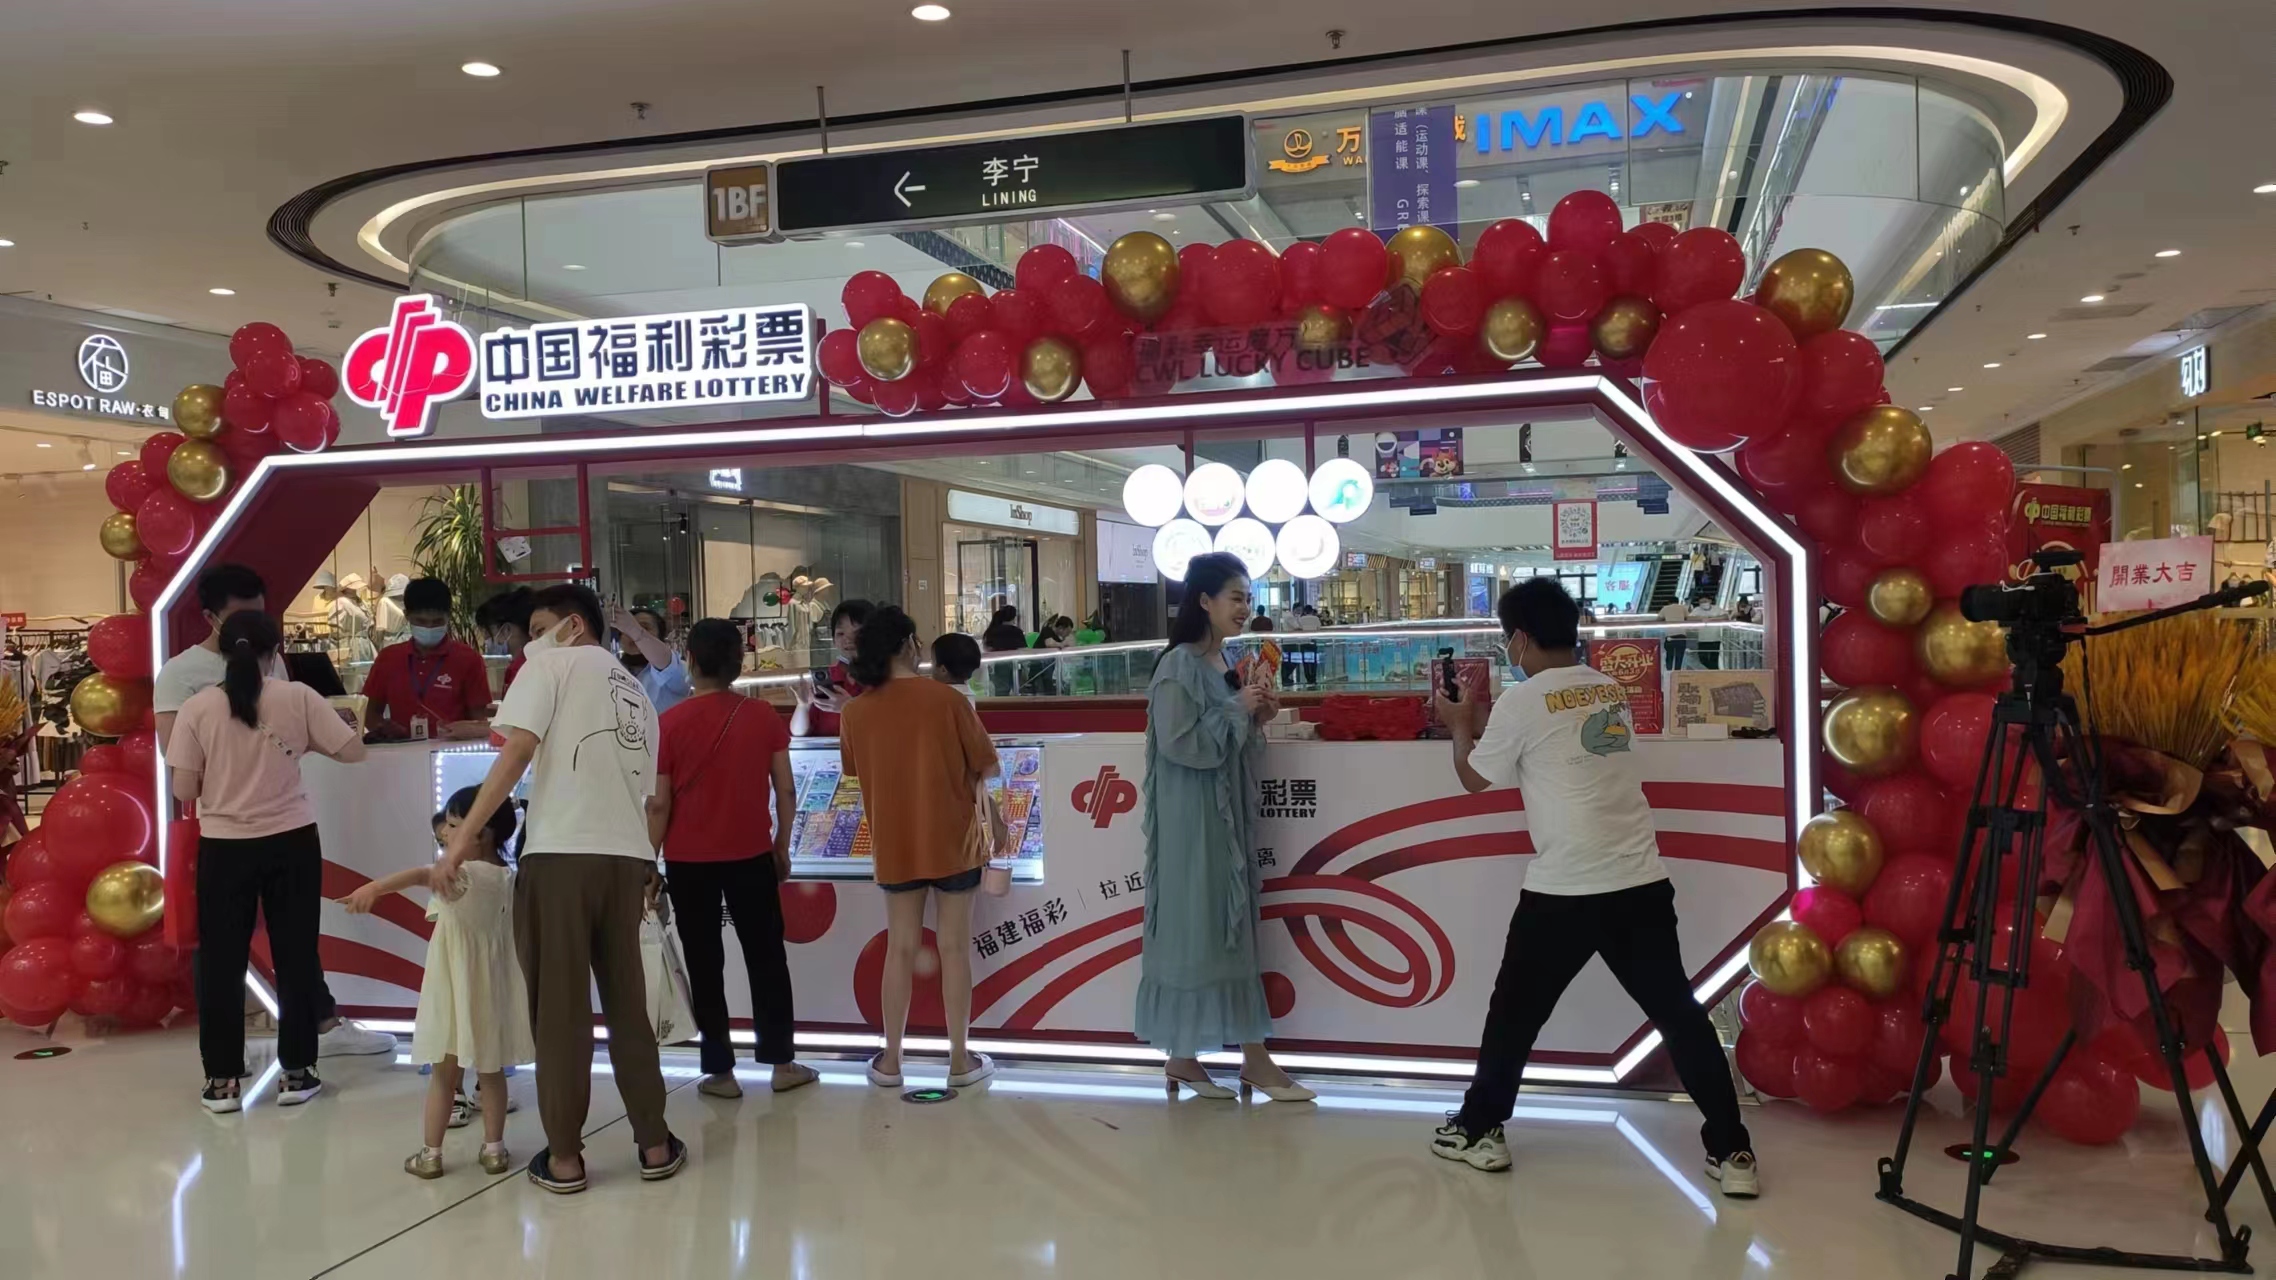 全省首家大型商业综合体福利彩票体验店在三明正式上线运营